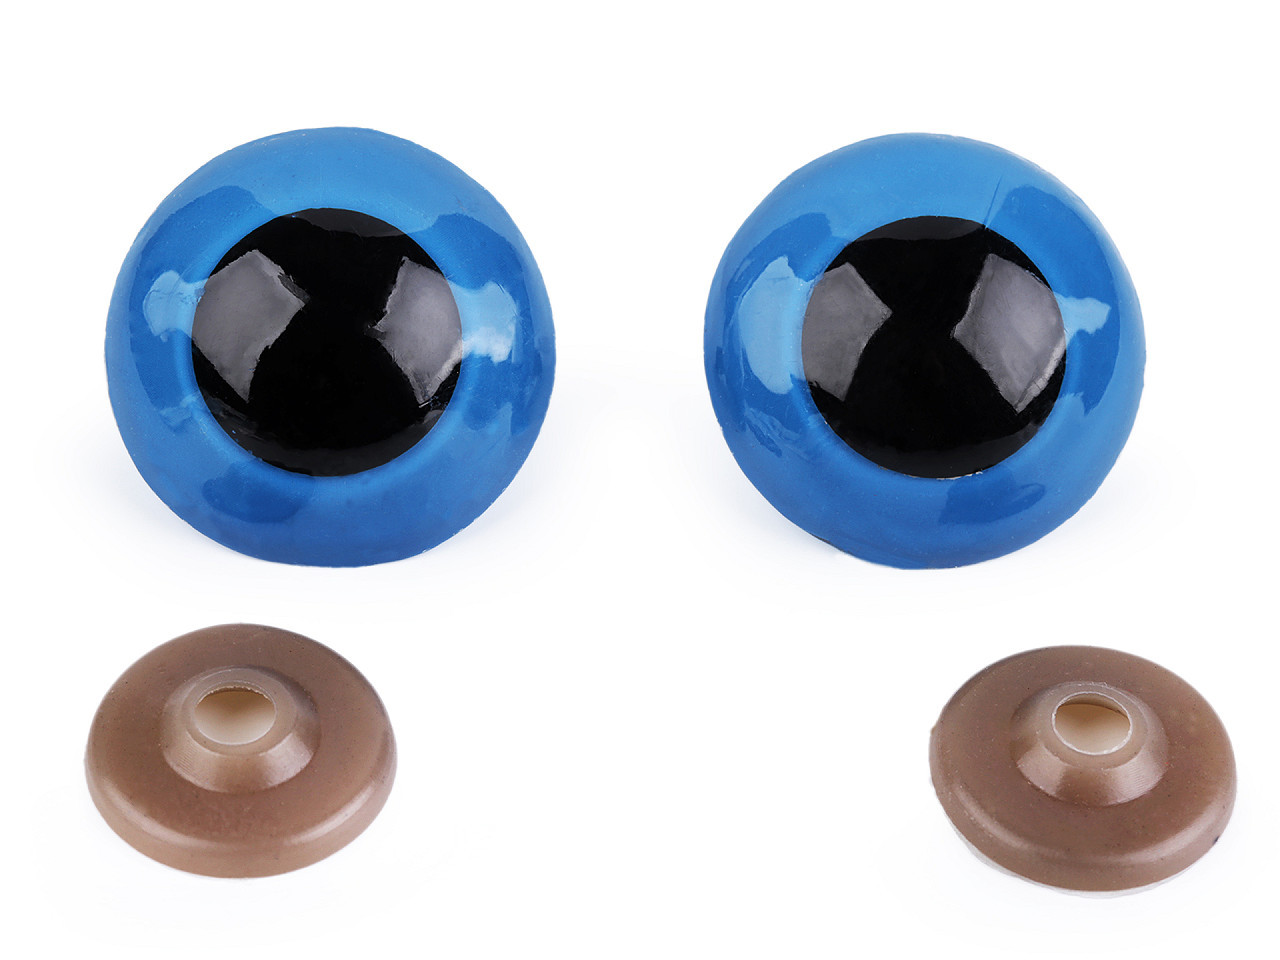 Oči velké s pojistkou Ø40 mm, barva 4 modrá